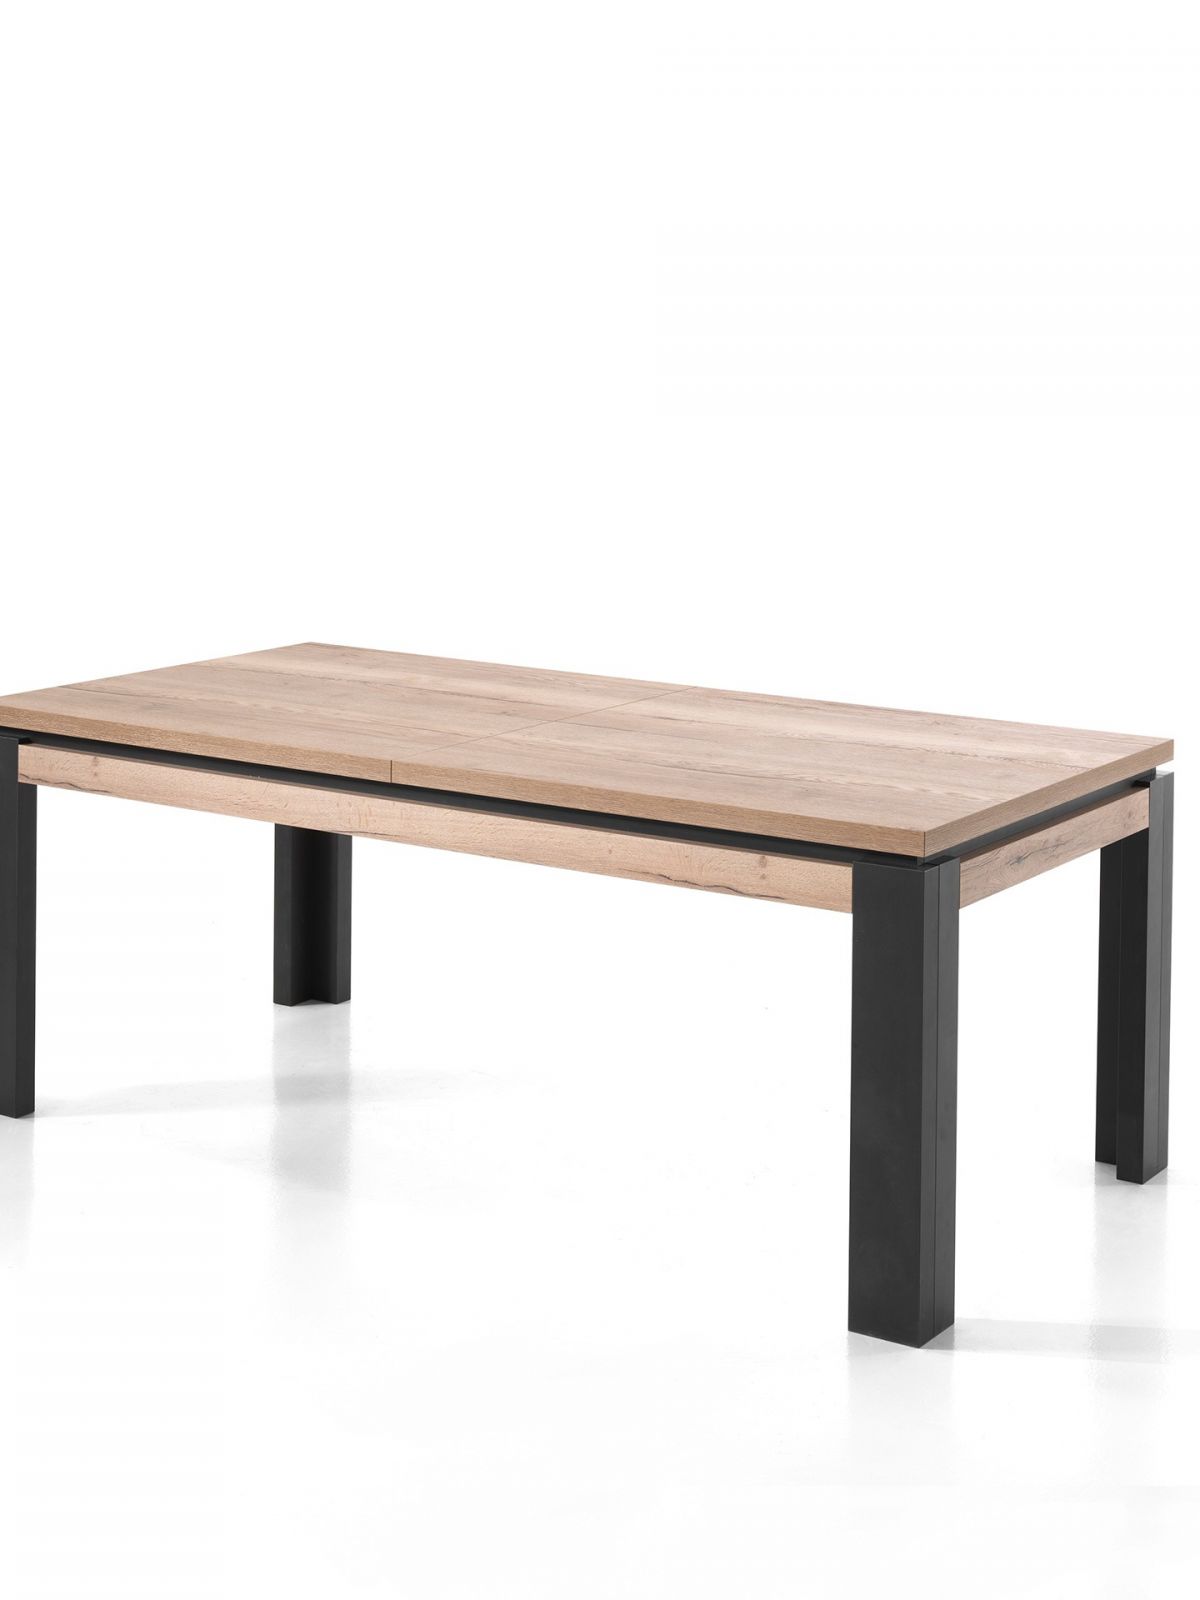 Table avec allonge rectangulaire 2m